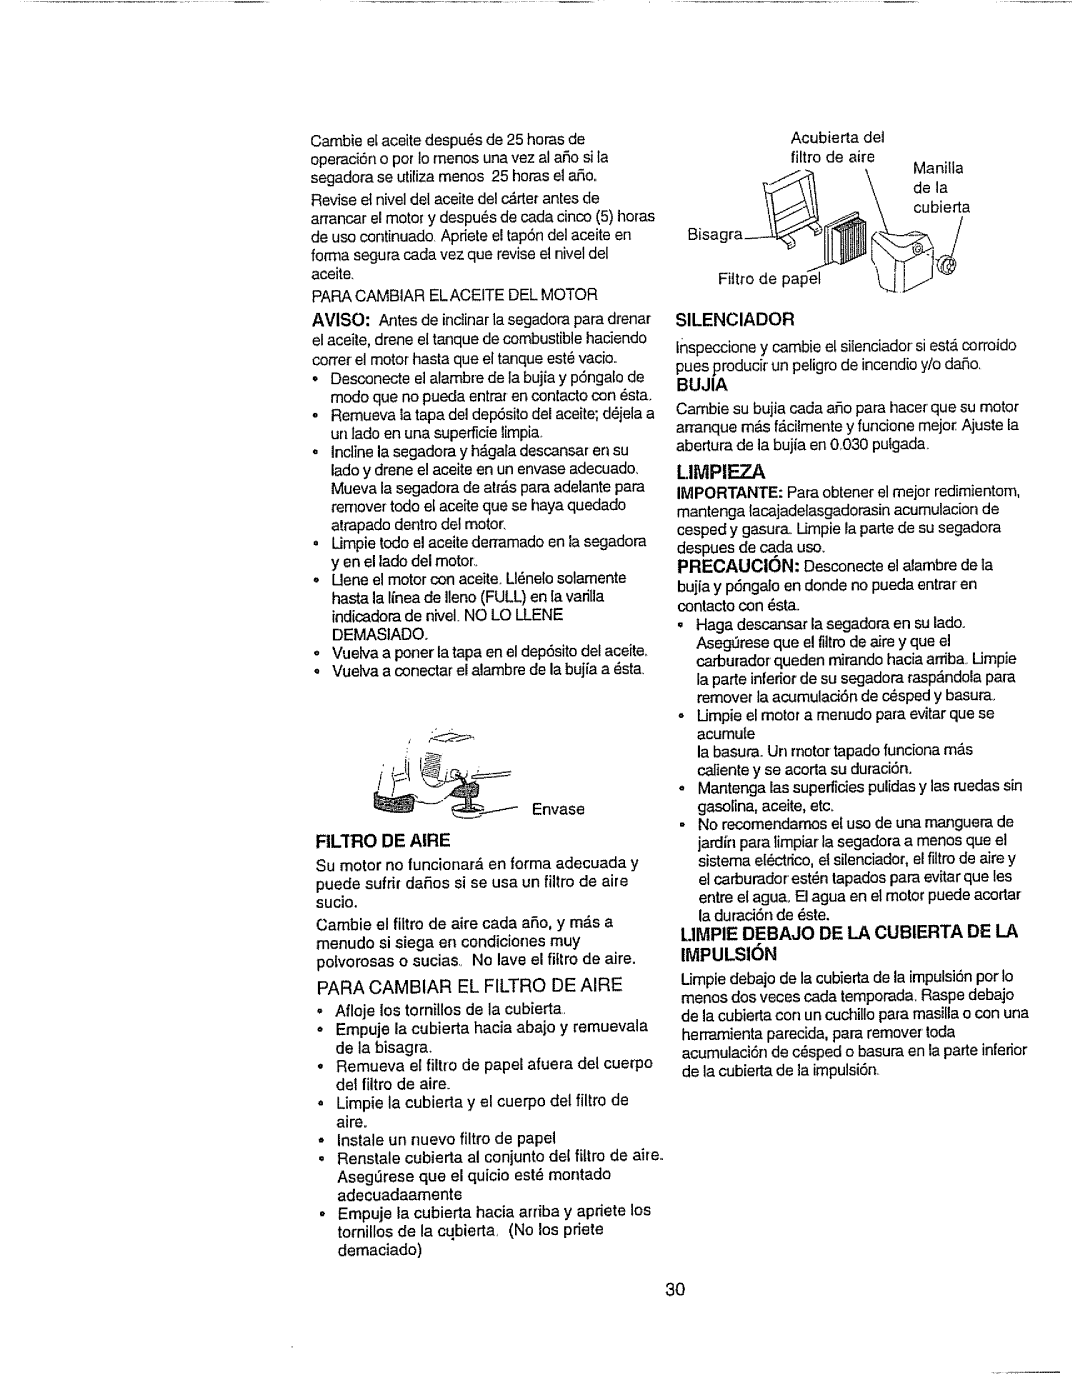 Craftsman 917.377592 manual Limpieza, Filifiode Aire, Limpie Debajo De La Cubierta De La Impulsion 